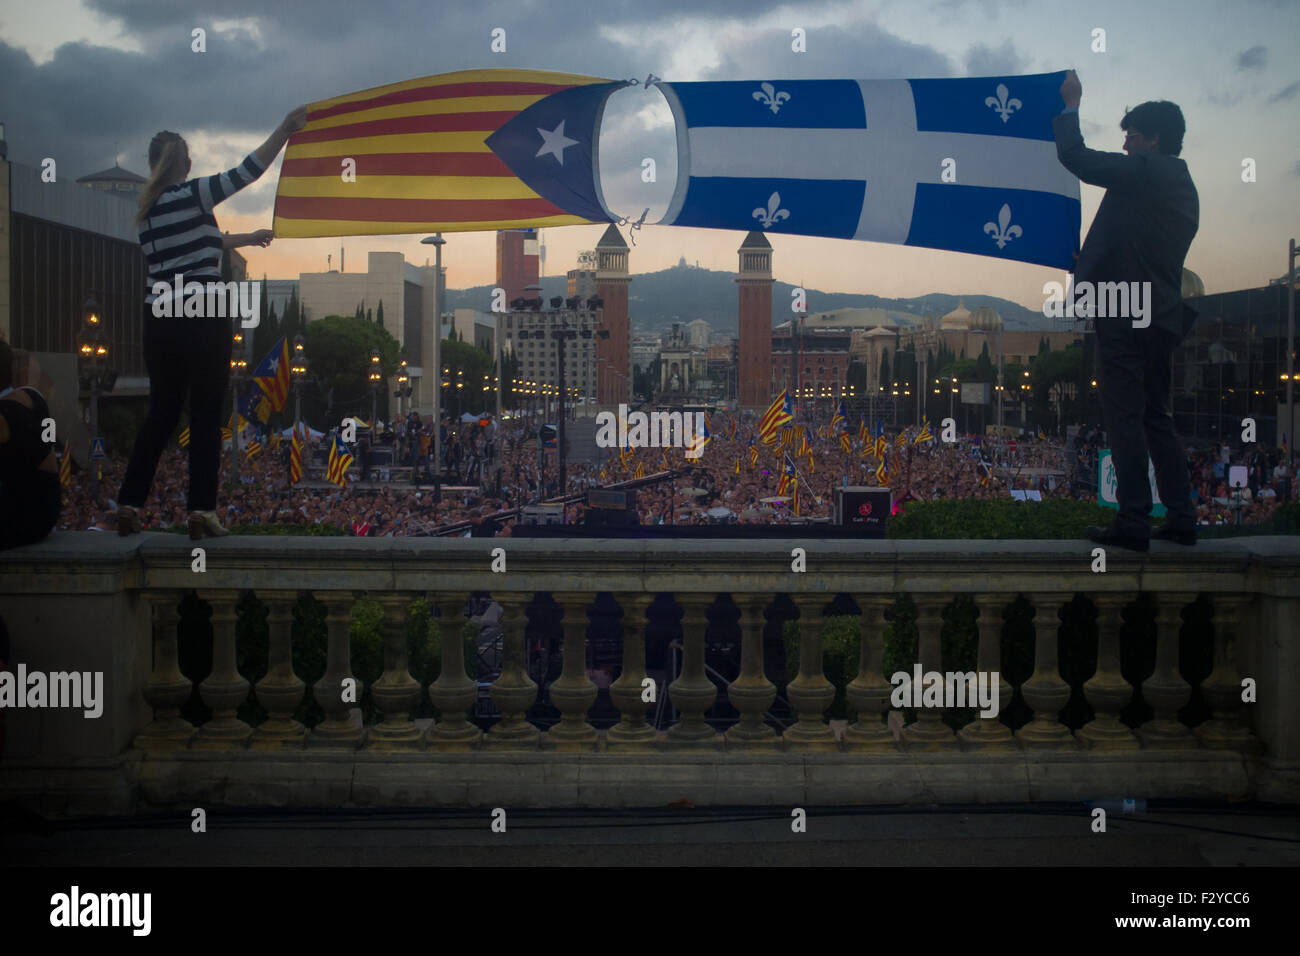 Barcelone, Catalogne, Espagne. 25 Septembre, 2015. Un homme et une woamn tenir un estelada drapeau indépendantiste (catalan) et un drapeau du Québec au cours de la dernière campagne de rallye 'Junts pel Si' (ensemble pour Oui) à Barcelone le 25 septembre, 2015. Dimanche prochain auront lieu des élections régionales en Catalogne. Les sondages indiquent que l'indépendance parties pourraient obtenir la majorité absolue. Crédit : Jordi Boixareu/ZUMA/Alamy Fil Live News Banque D'Images